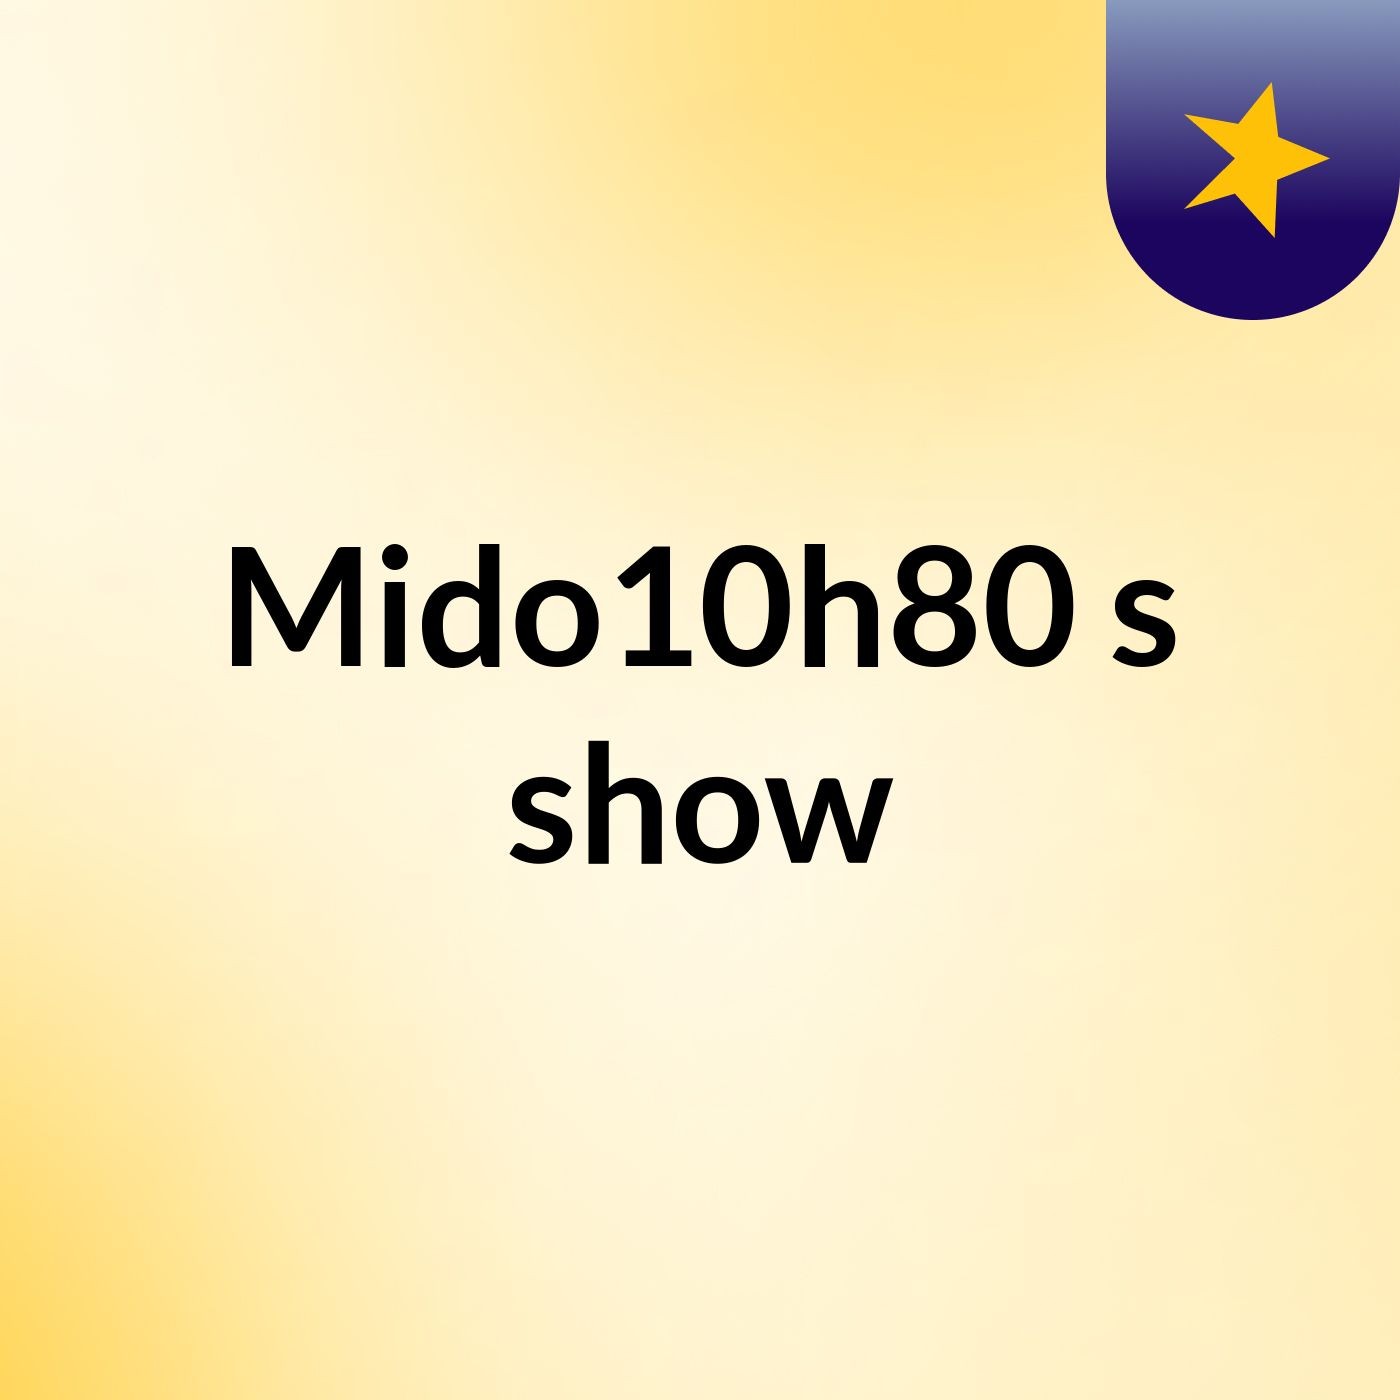 Mido10h80's show